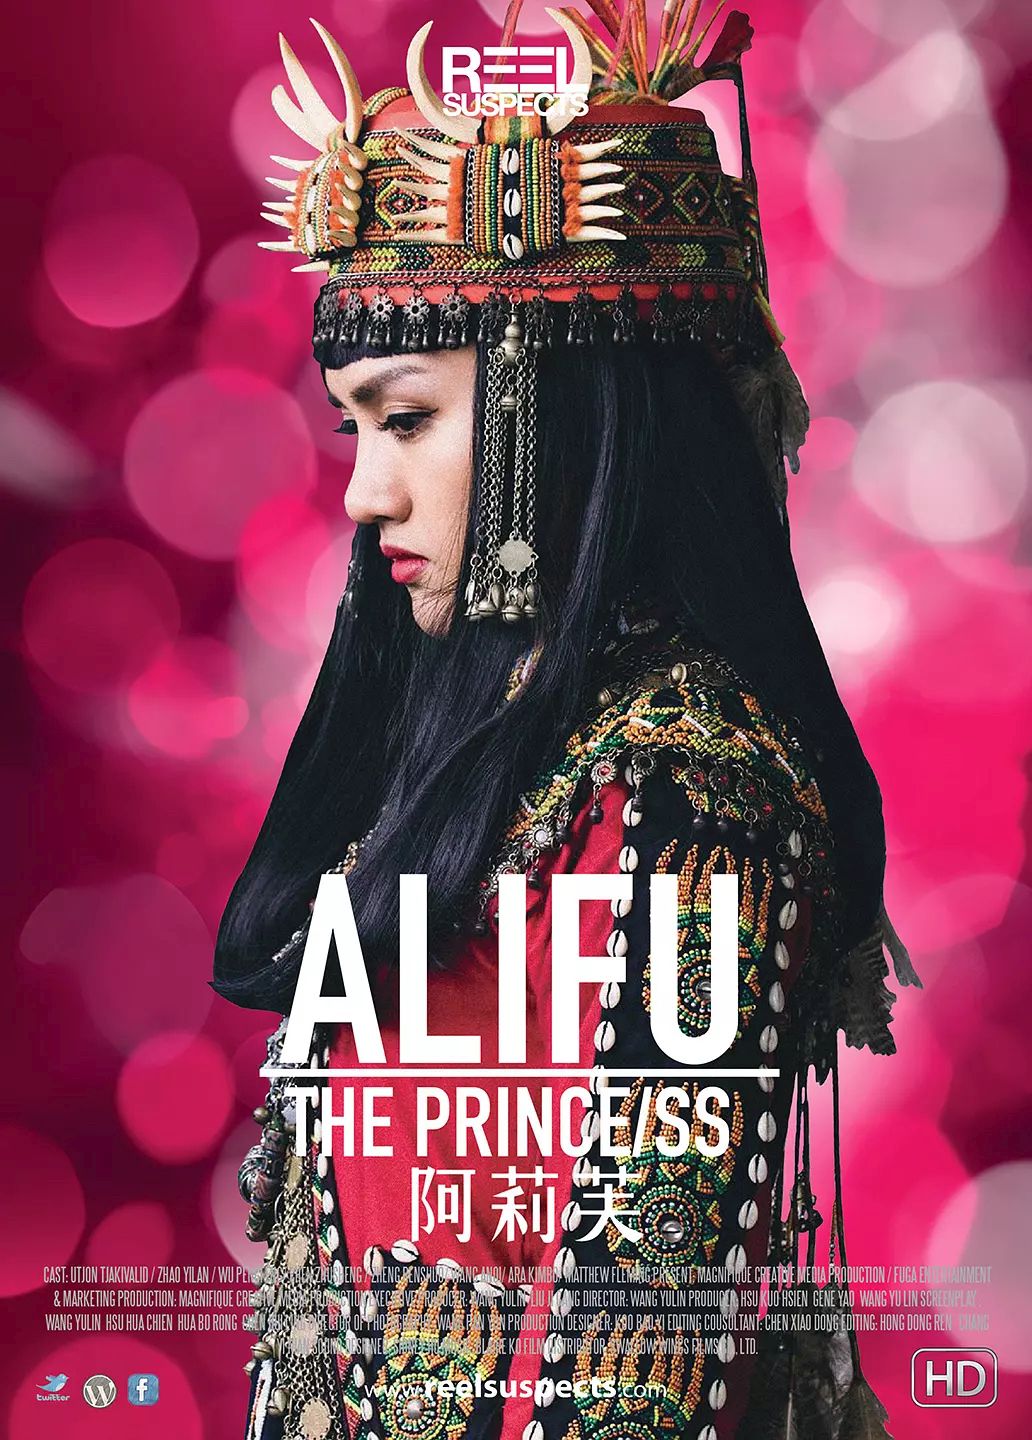 阿莉芙 Alifu, the Prince/ss